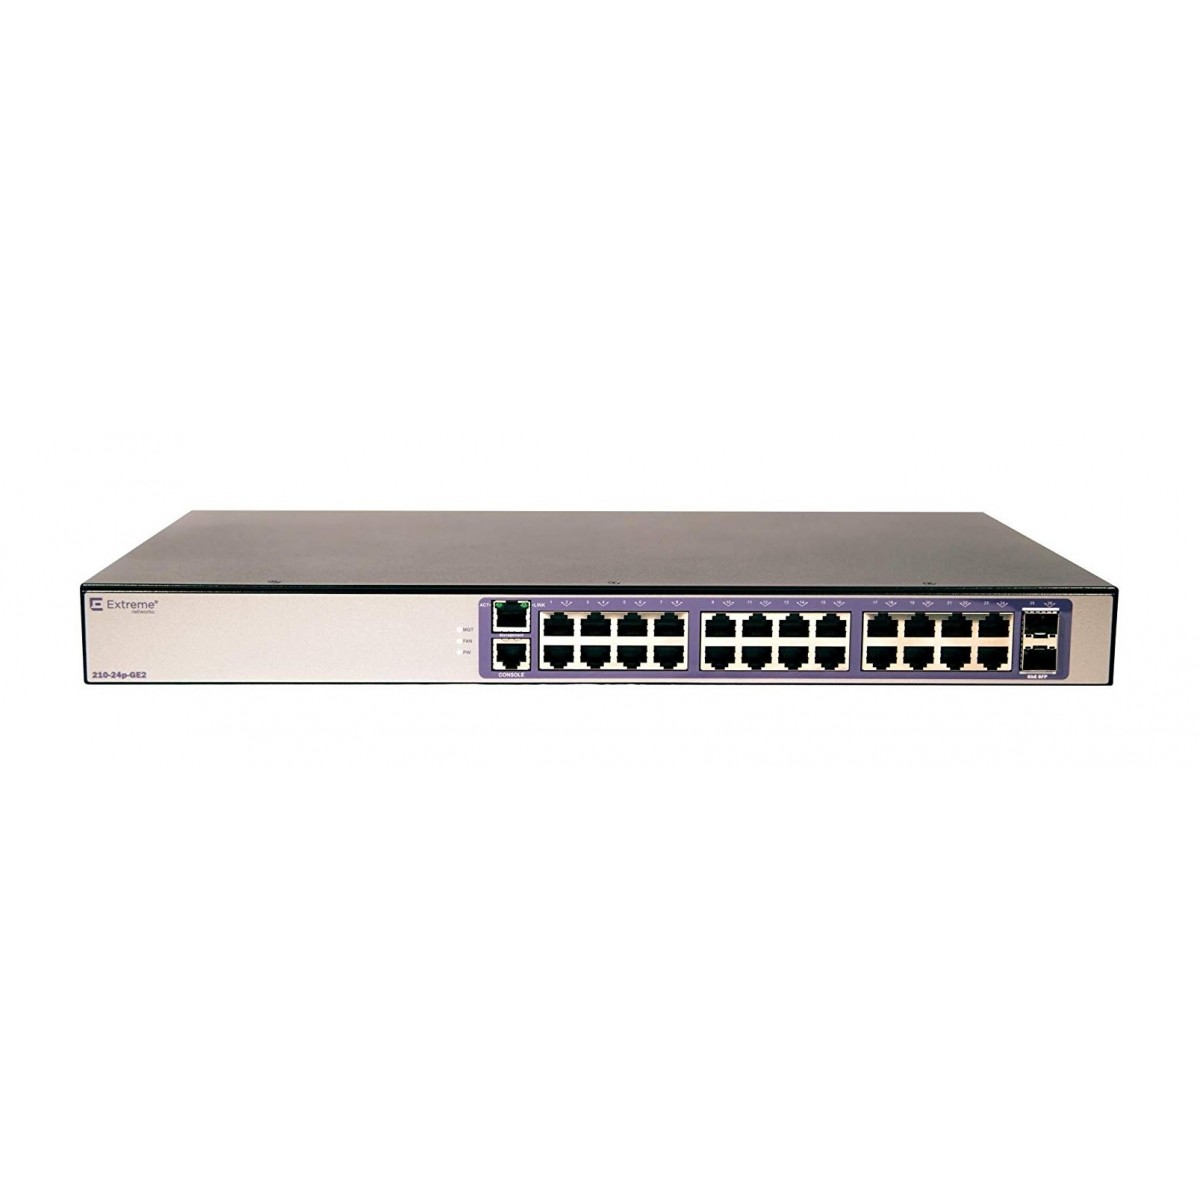 Extreme Networks 210-24P-GE2 - Managed - L2 - Gigabit Ethernet (10/100/1000) - 100 Gigabit Ethernet - Power over Ethernet (PoE)